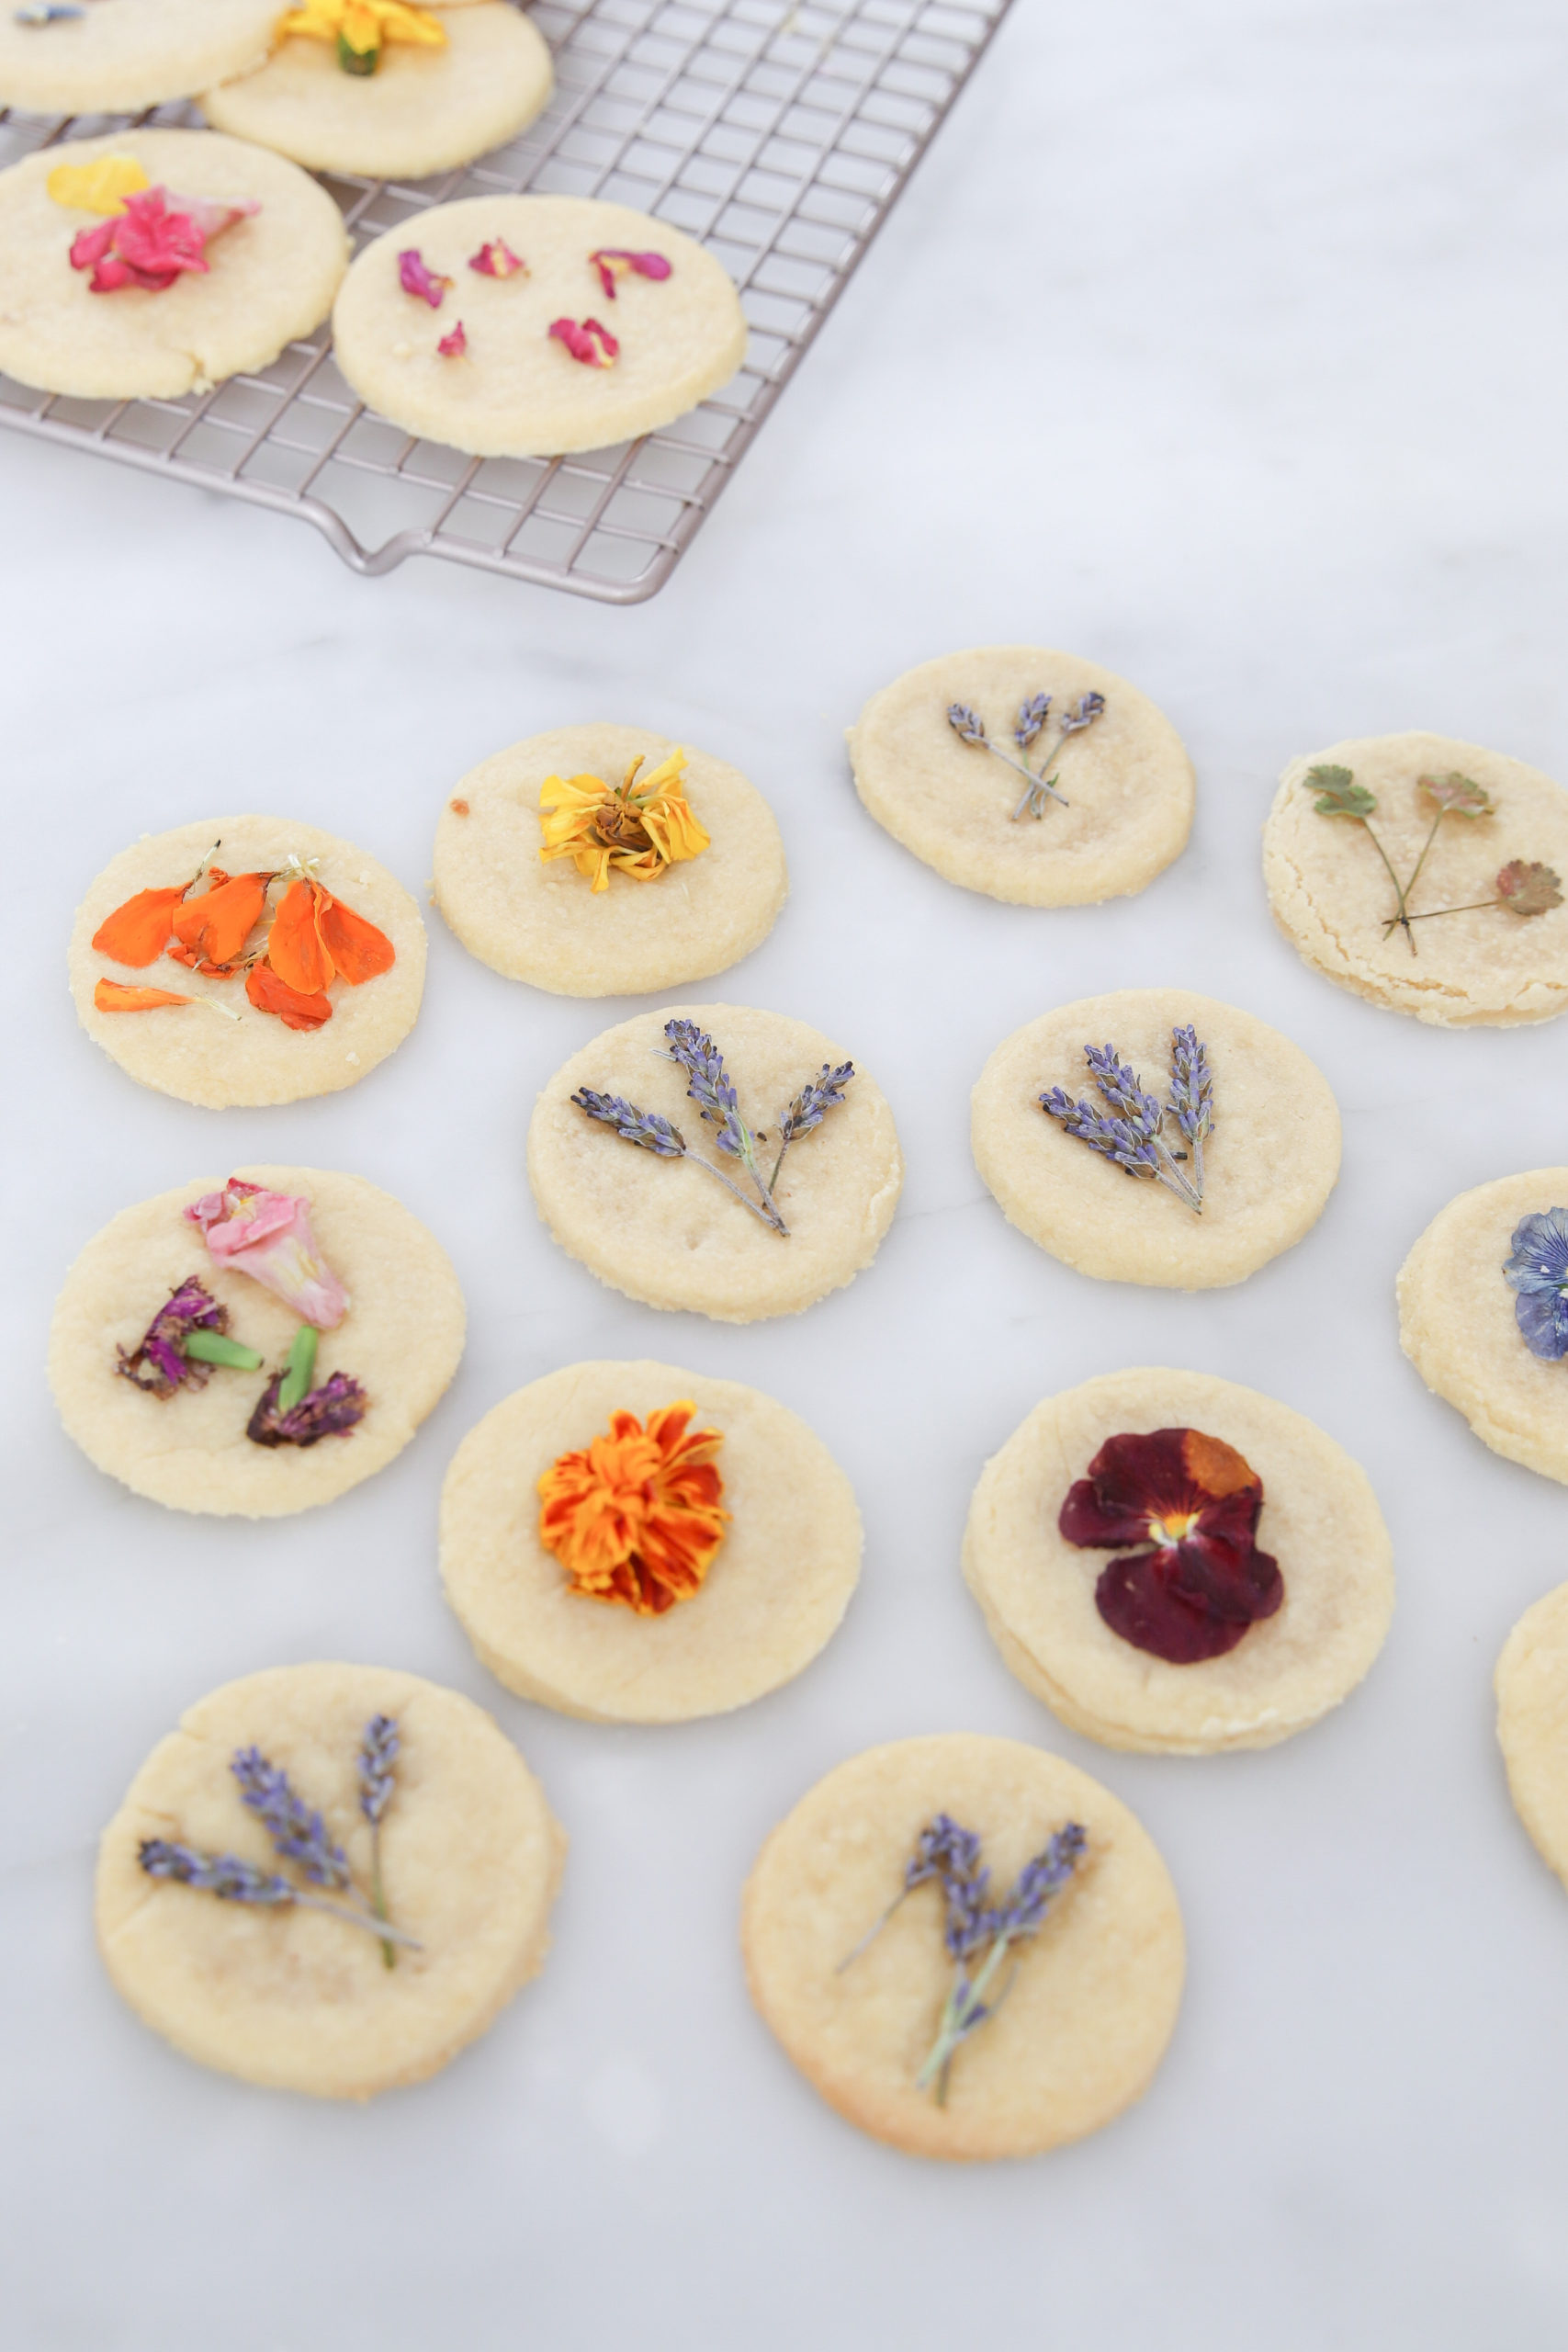 edible flower shortbread cookies #pressedflowercookies